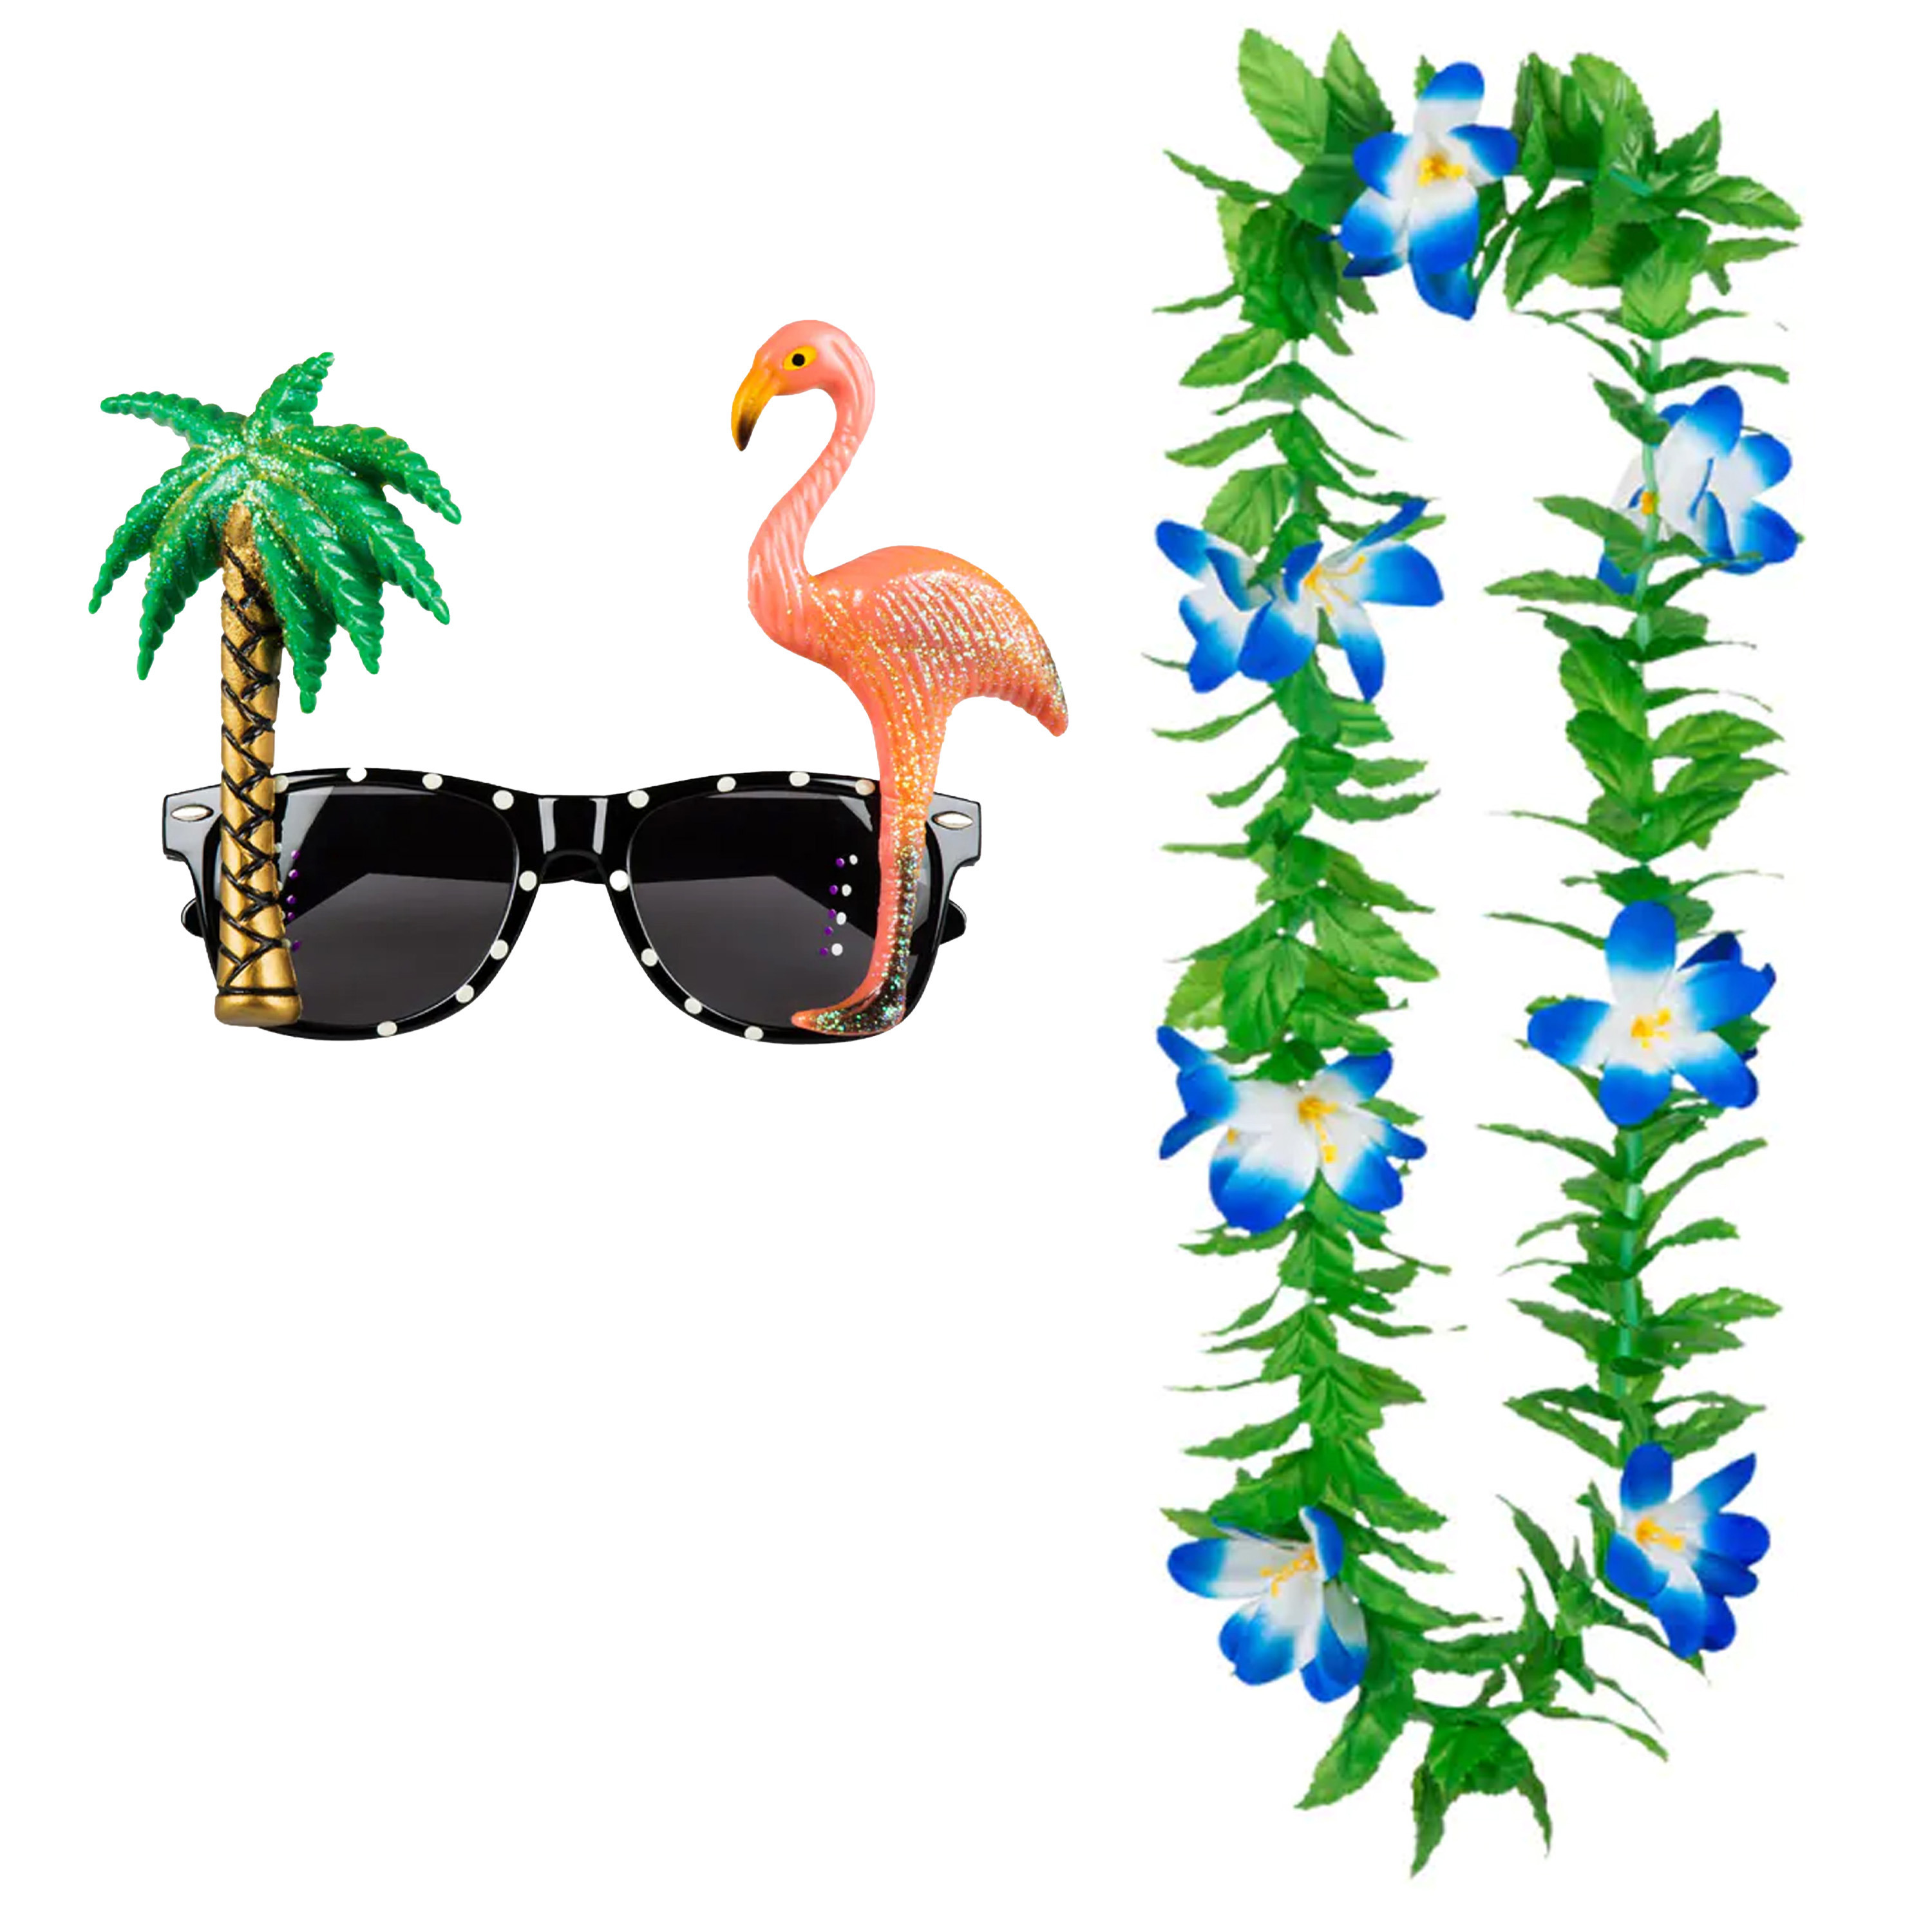 Tropische Hawaii party verkleed accessoires set Funny zonnebril en bloemenkrans groen-blauw